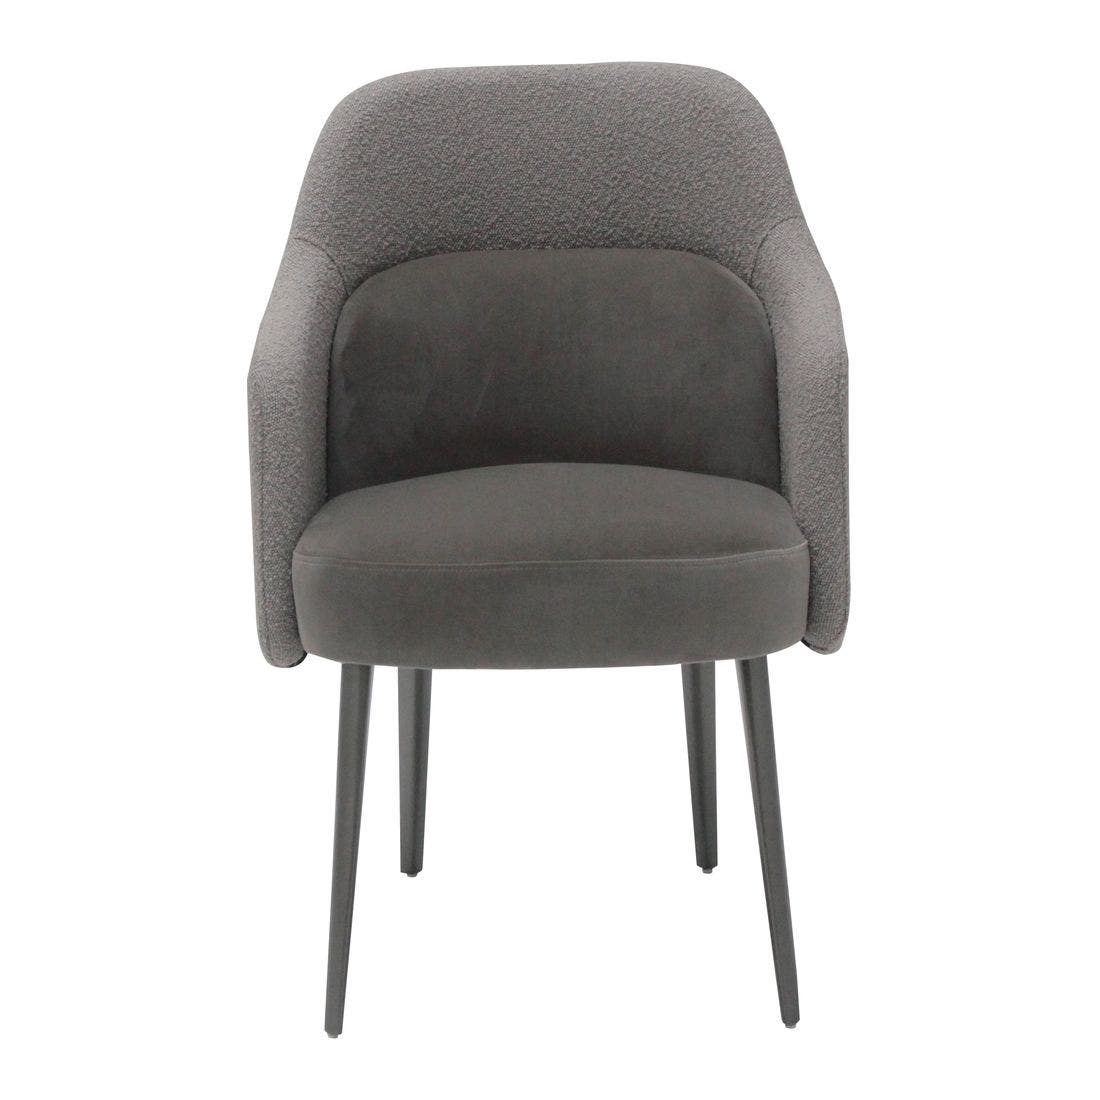 เก้าอี้ผ้ากำมะหยี่ รุ่น Nerrex สีน้ำตาลเข้ม01